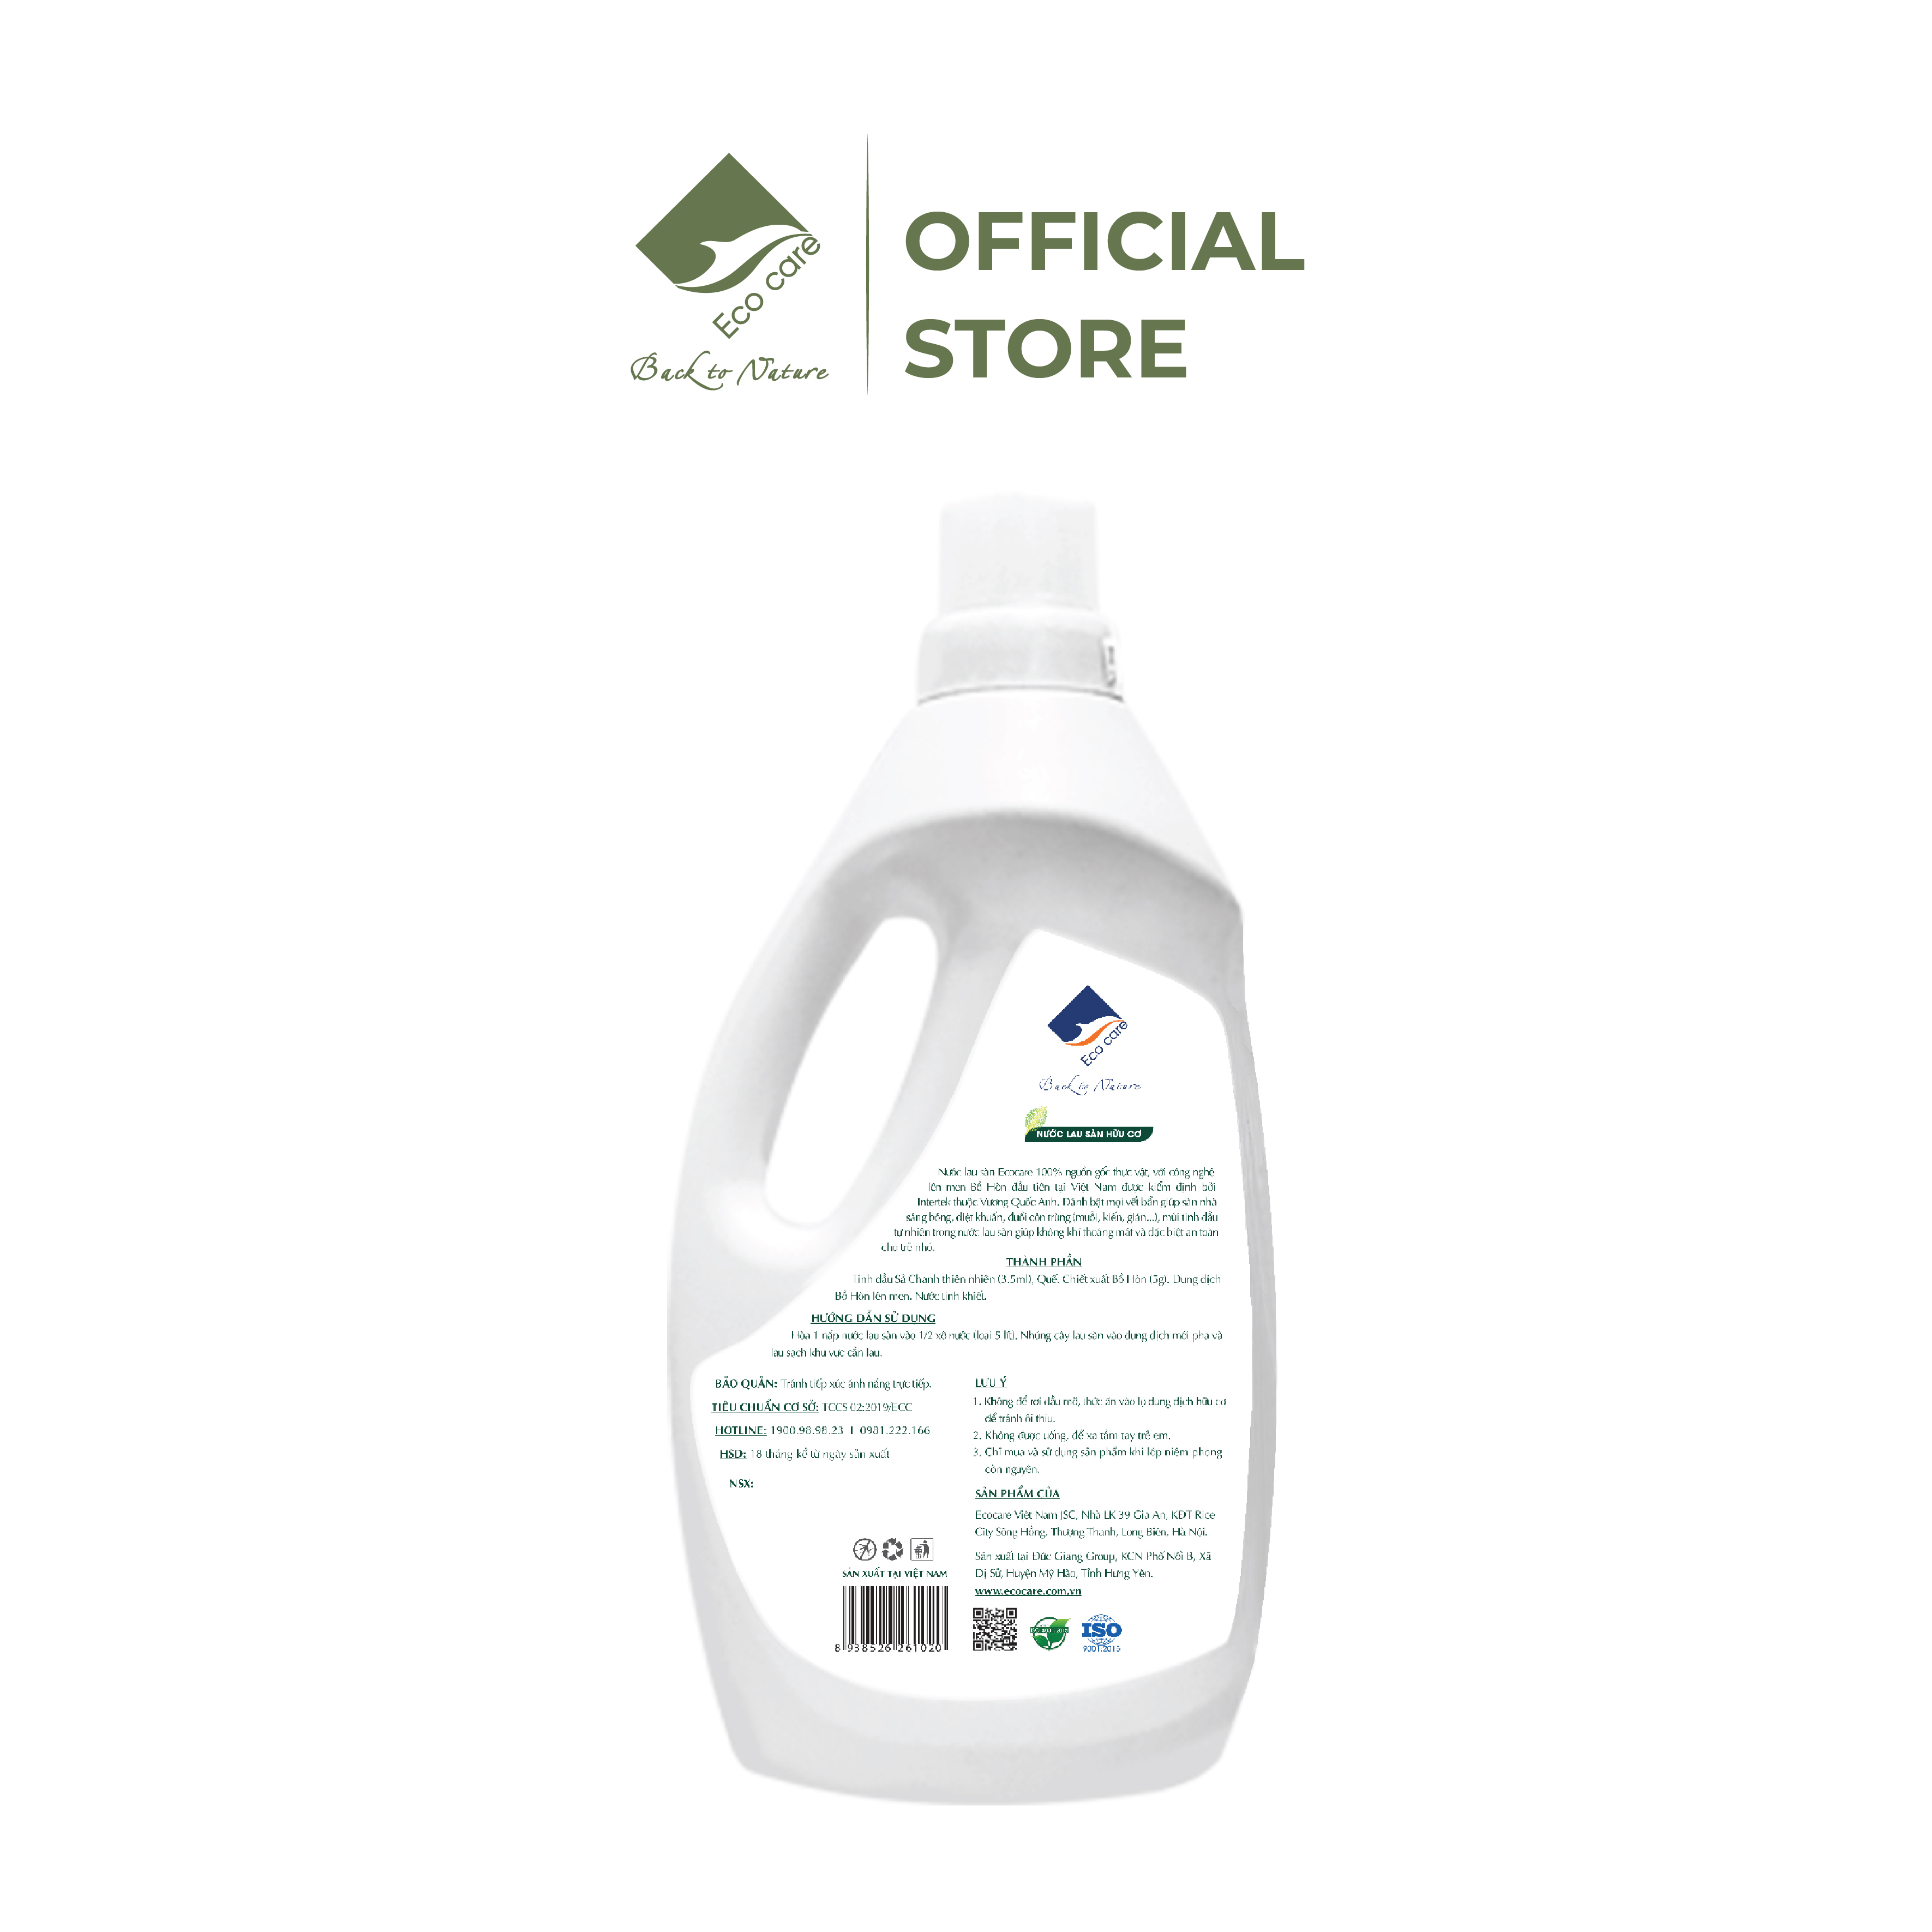 Nước lau sàn Hữu cơ đuổi muỗi tinh dầu thiên nhiên thương hiệu Ecocare